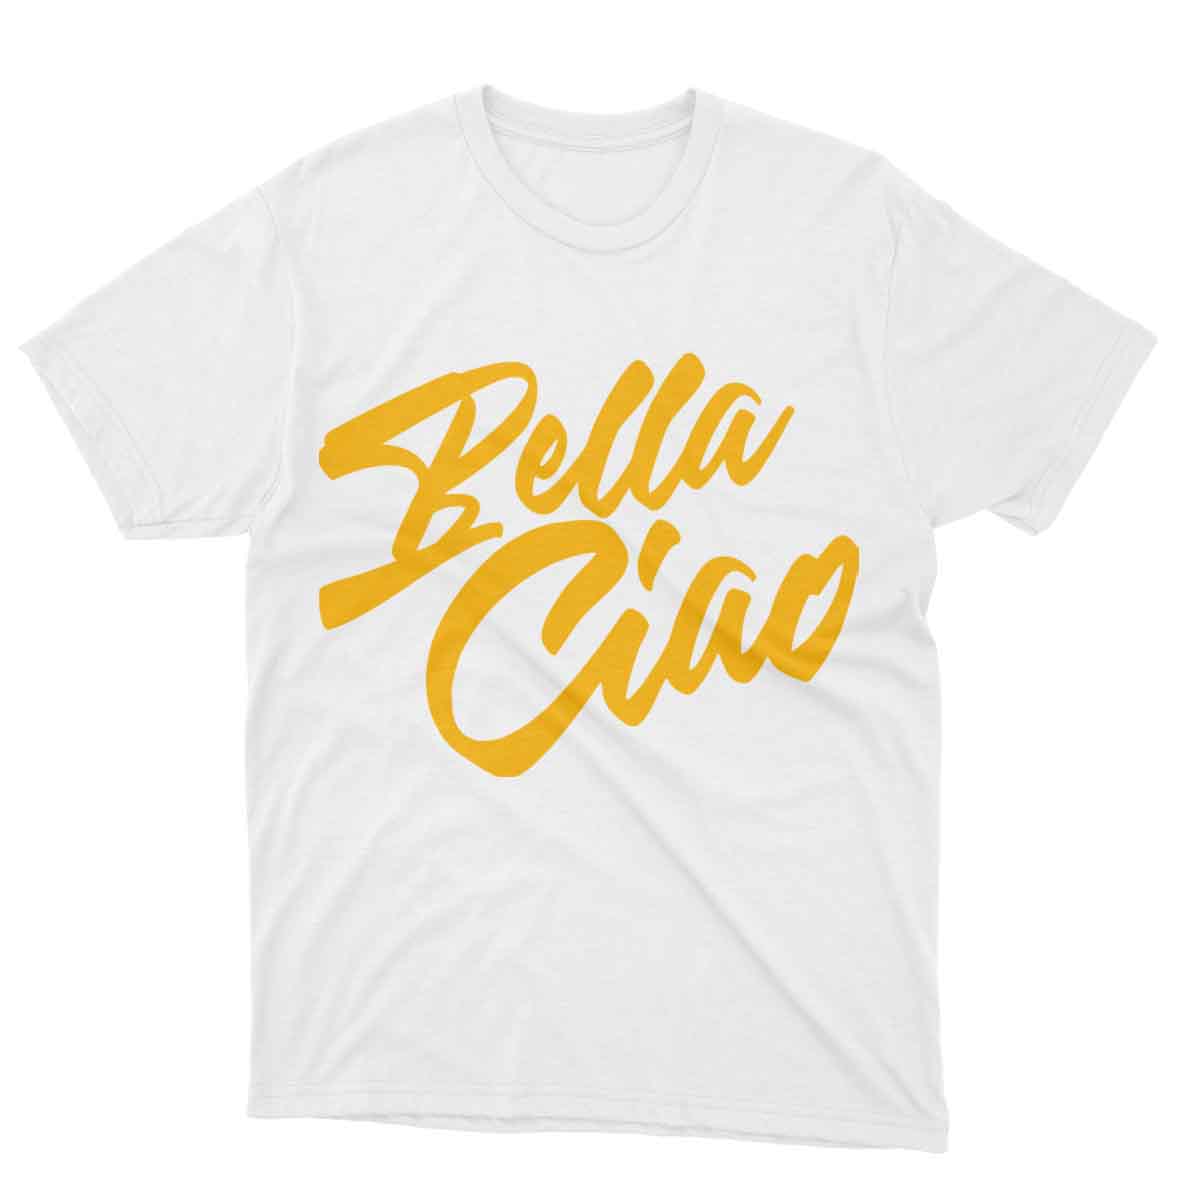 Bella Ciao Yellow Design